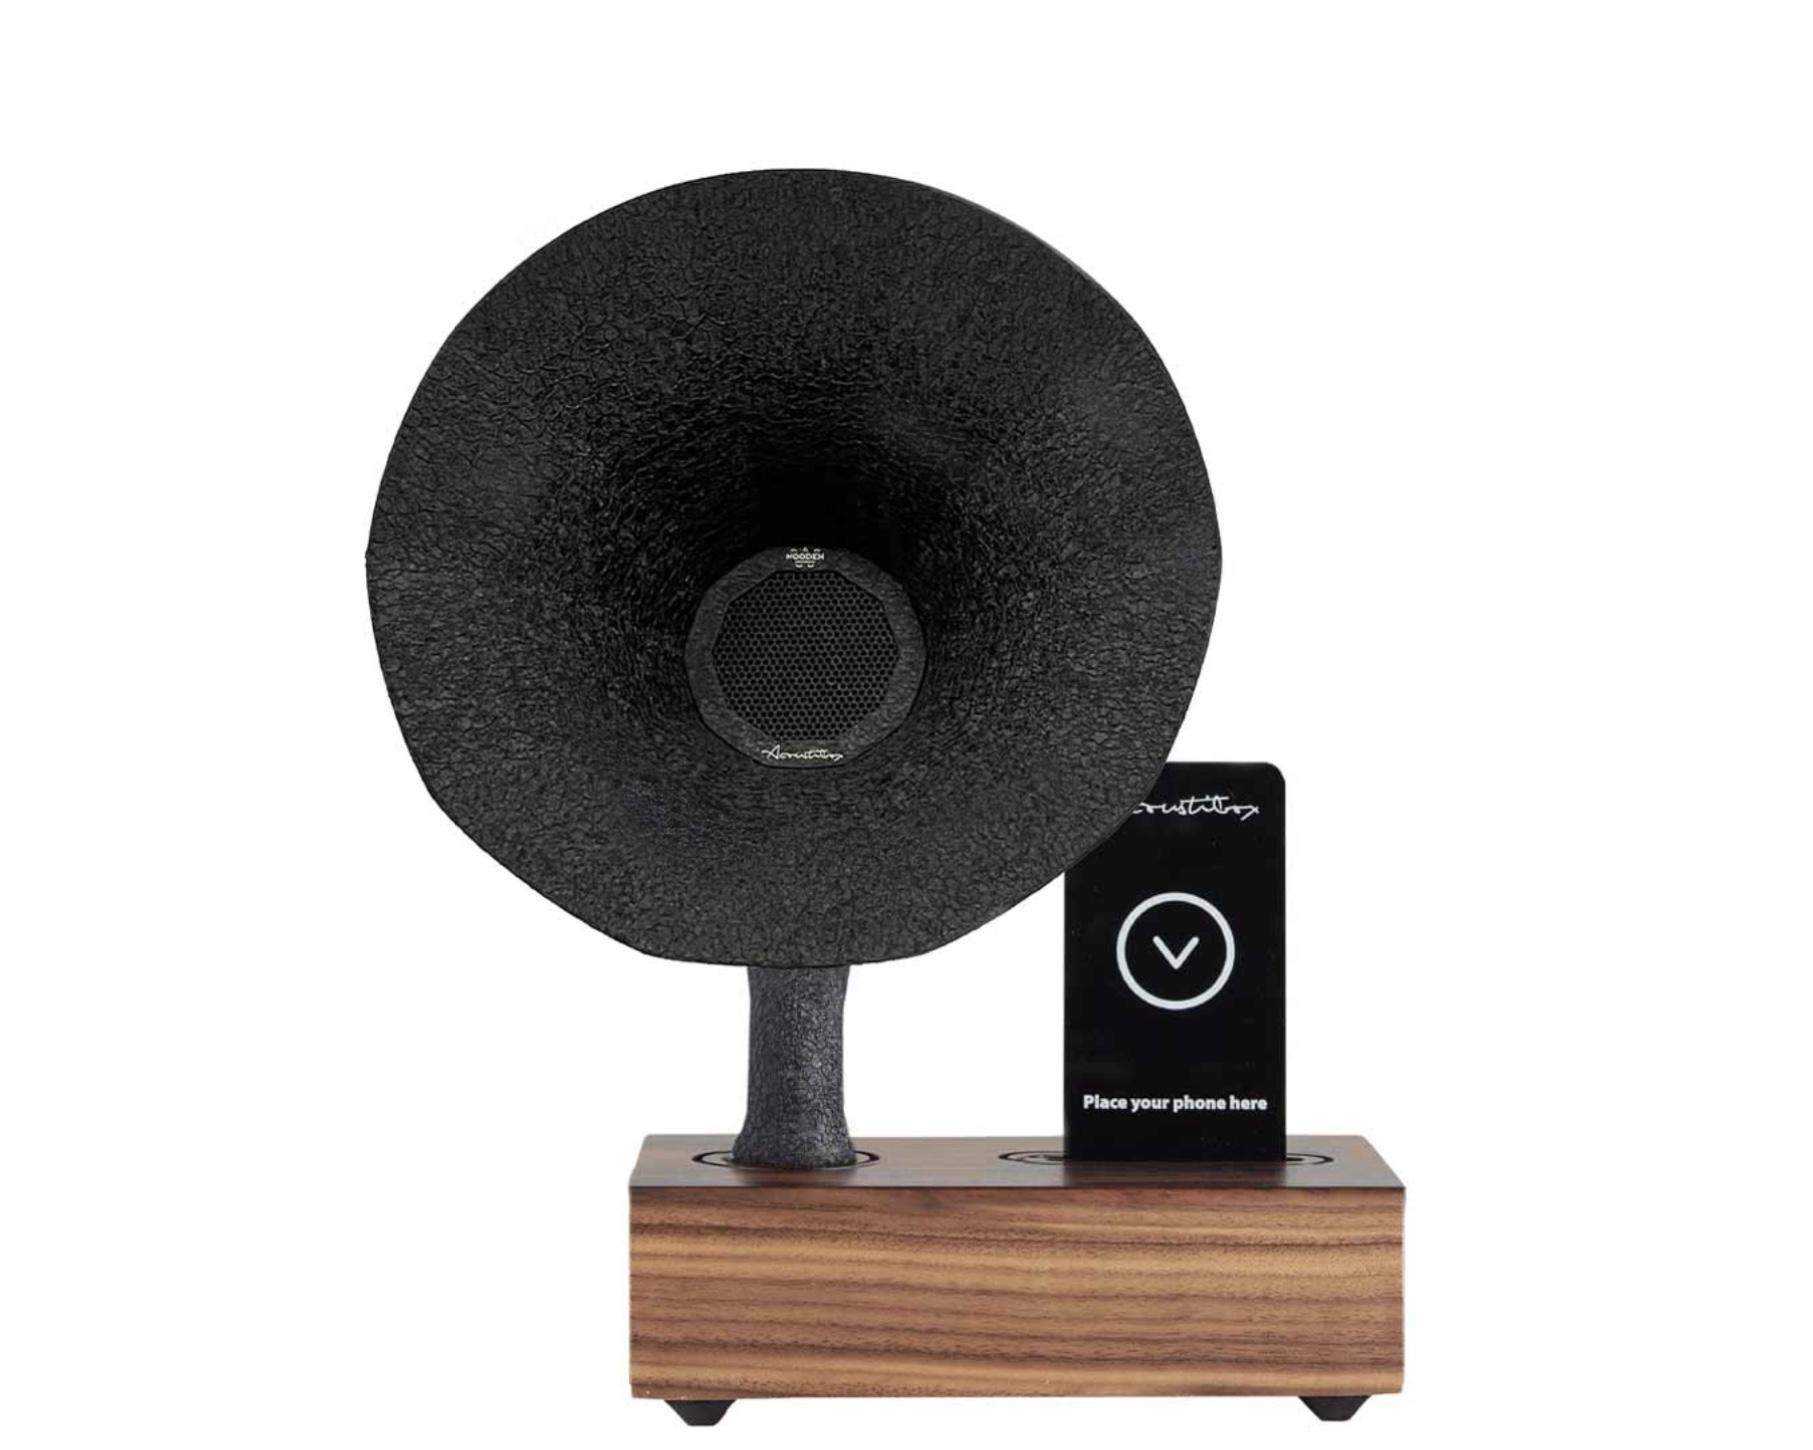 Akustiklautsprecher „Grammophon“ für Smartphone